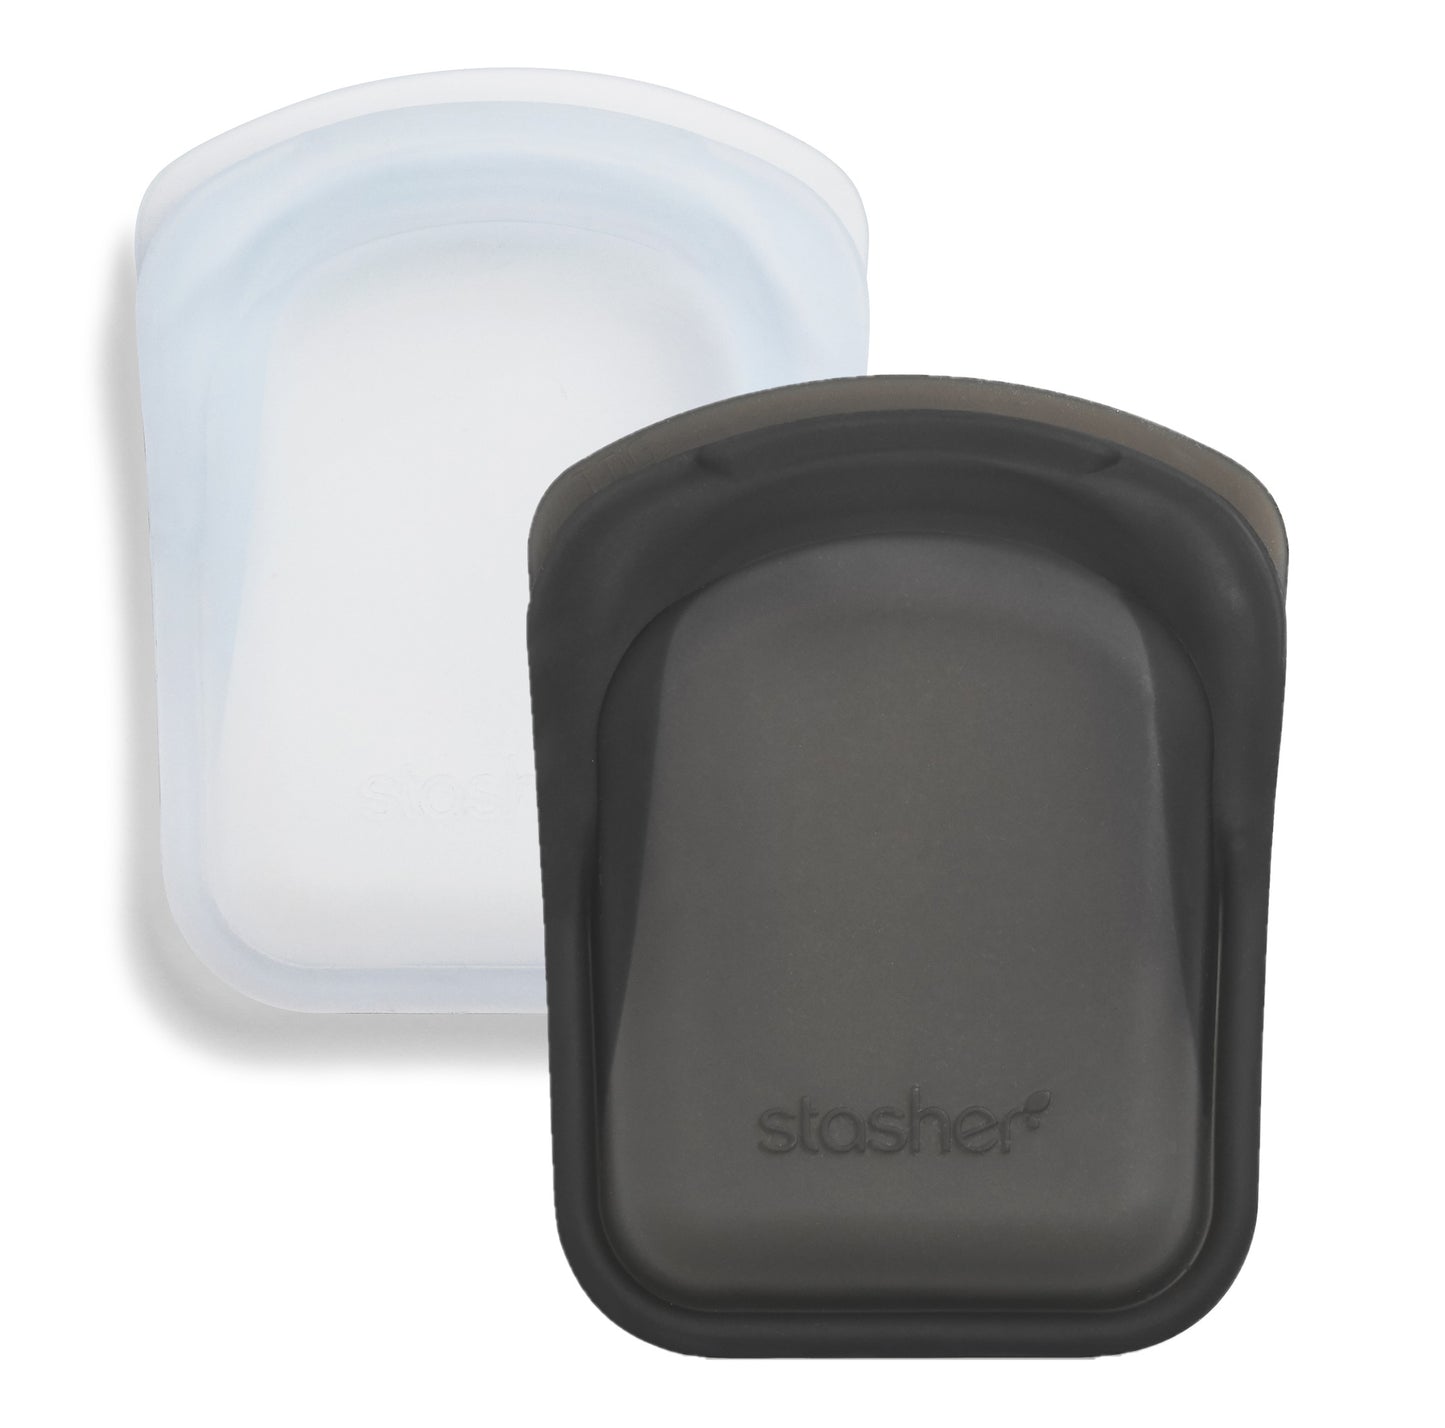 Stasher Pocket Bag | Reusable Food Storage Bag